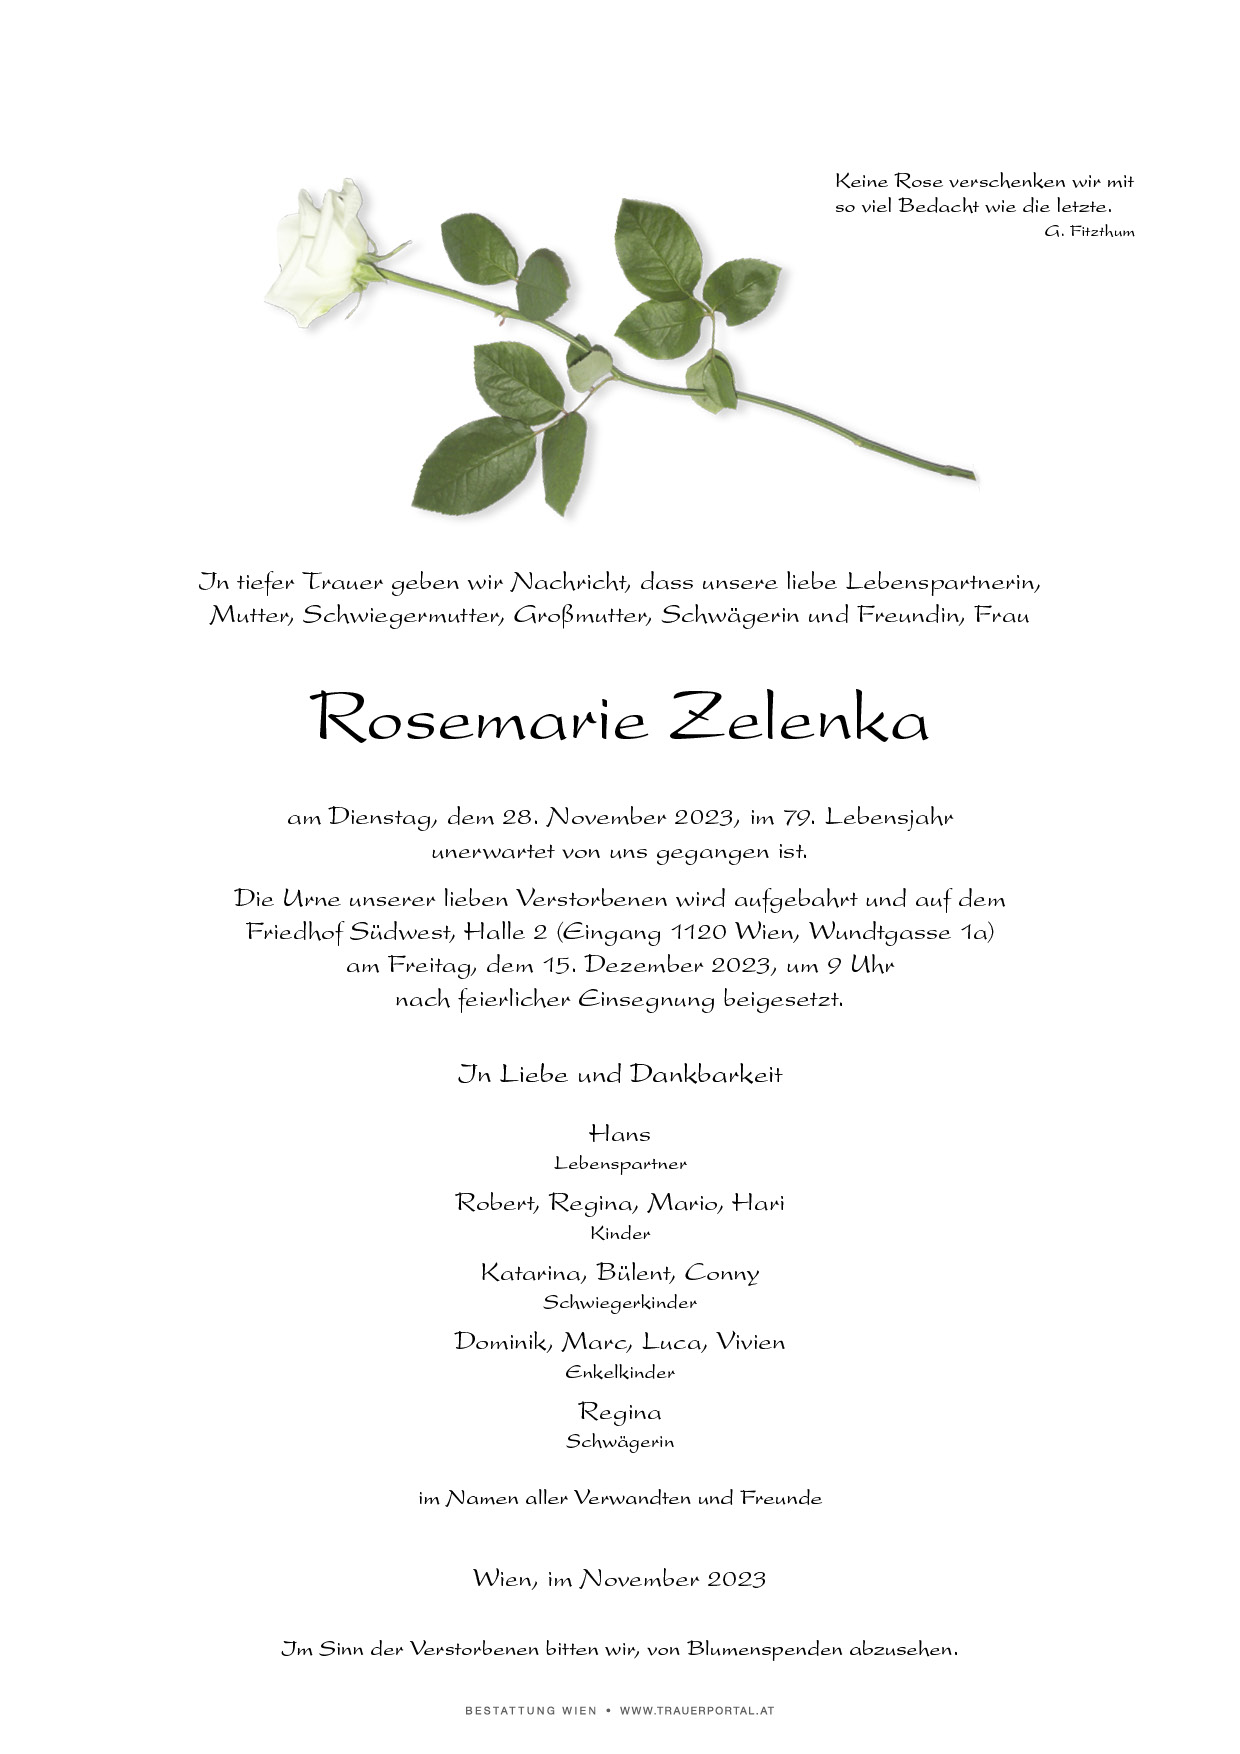 Rosemarie Zelenka